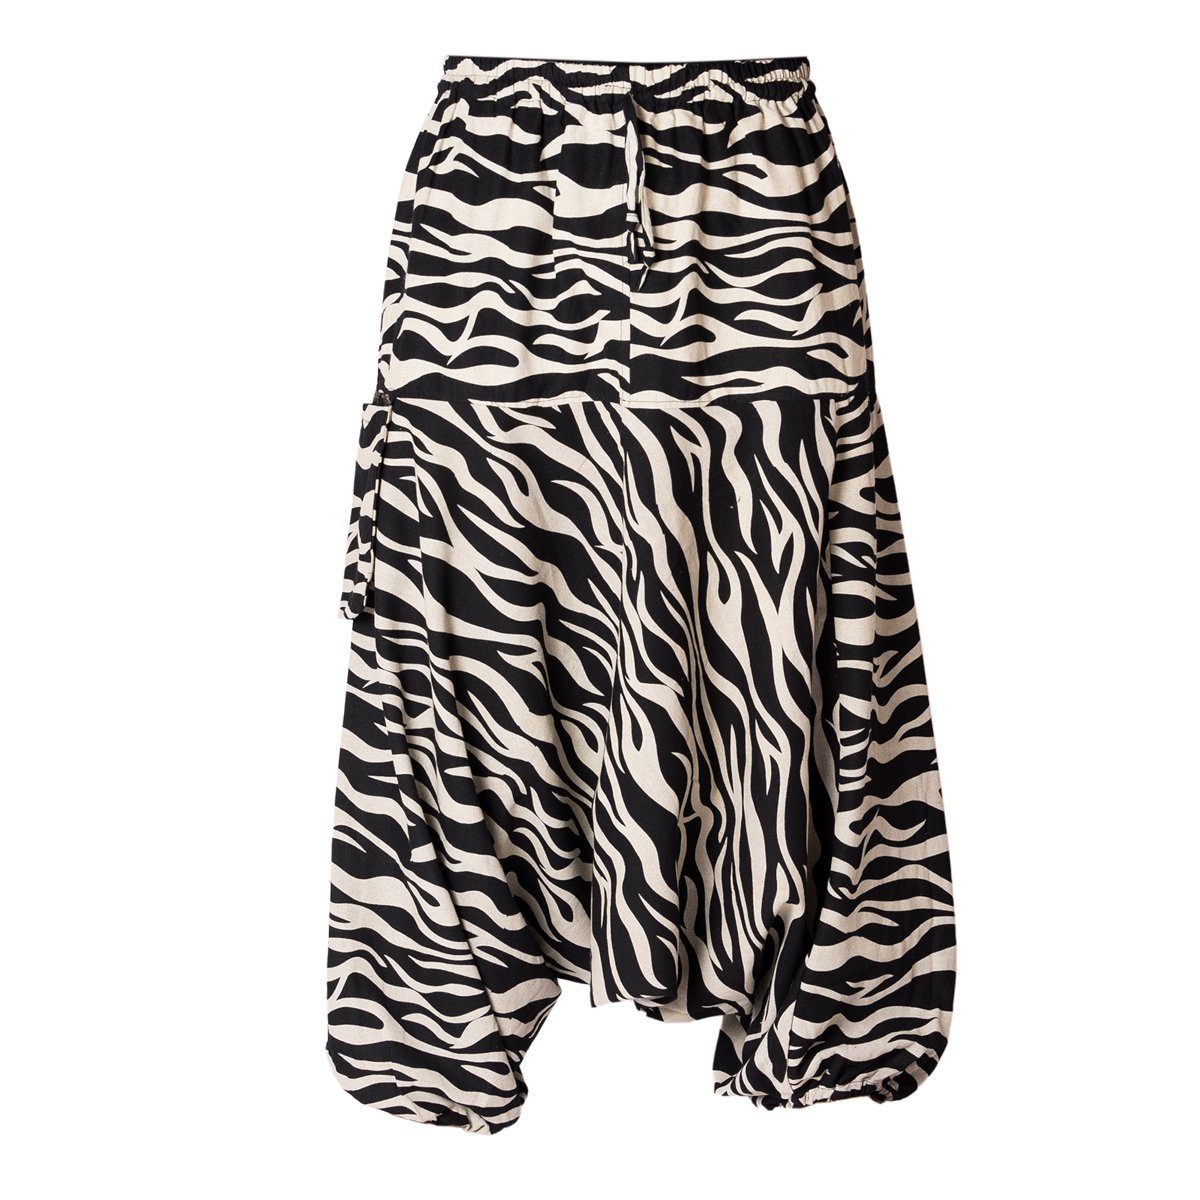 Zebra bequeme grob aus japanischen gewebter Haremshose Mustern Baumwolle PANASIAM Freizeithose mit bedruckt Relaxhose Damen 100% Aladinhose Pumphose Geometrix